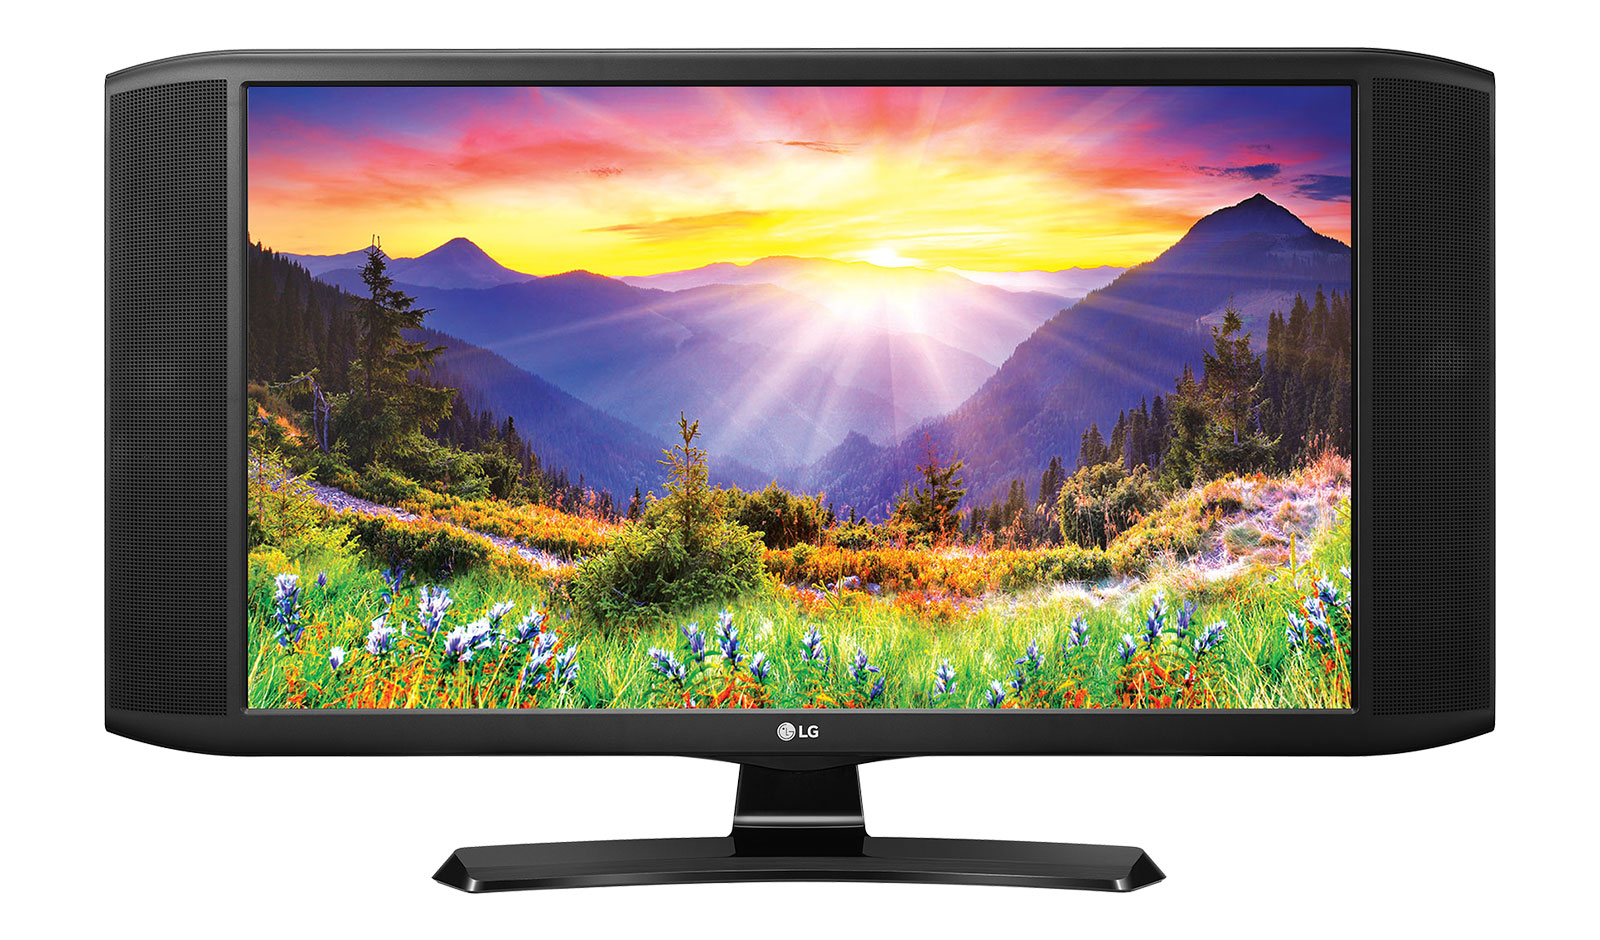 Телевизоры лджи отзывы. LG 24-inch Smart TV. Led телевизоры LG 75qned966pa. Led телевизоры LG 75qned916pa. Телевизор LG 24tn520s.